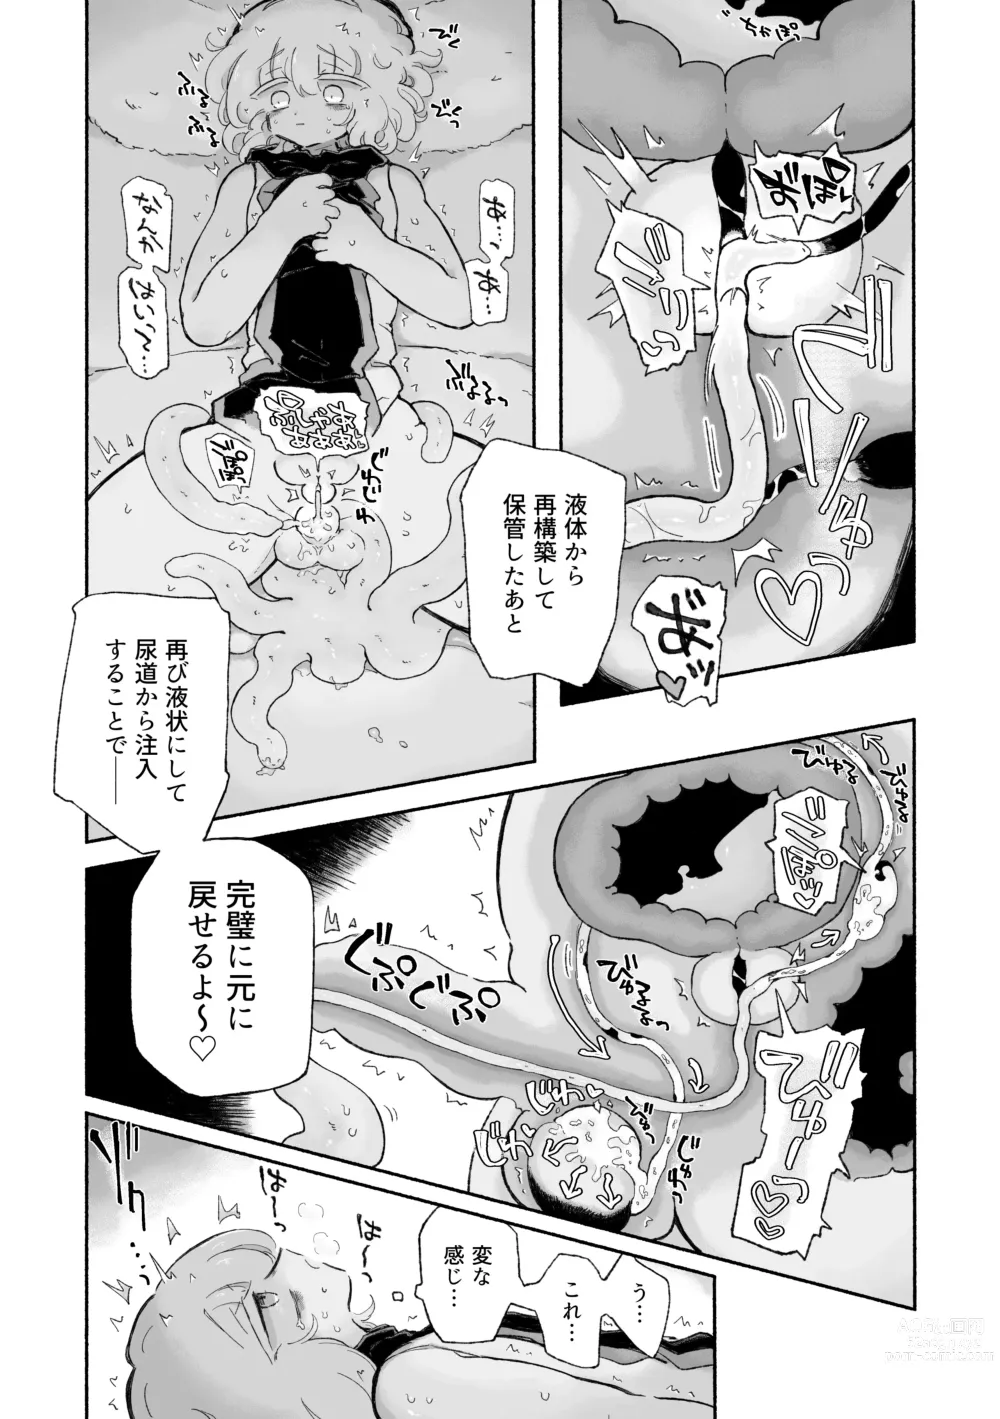 Page 11 of doujinshi Torodashi. ~Museiki-ka Kyosei Taiken Beit~